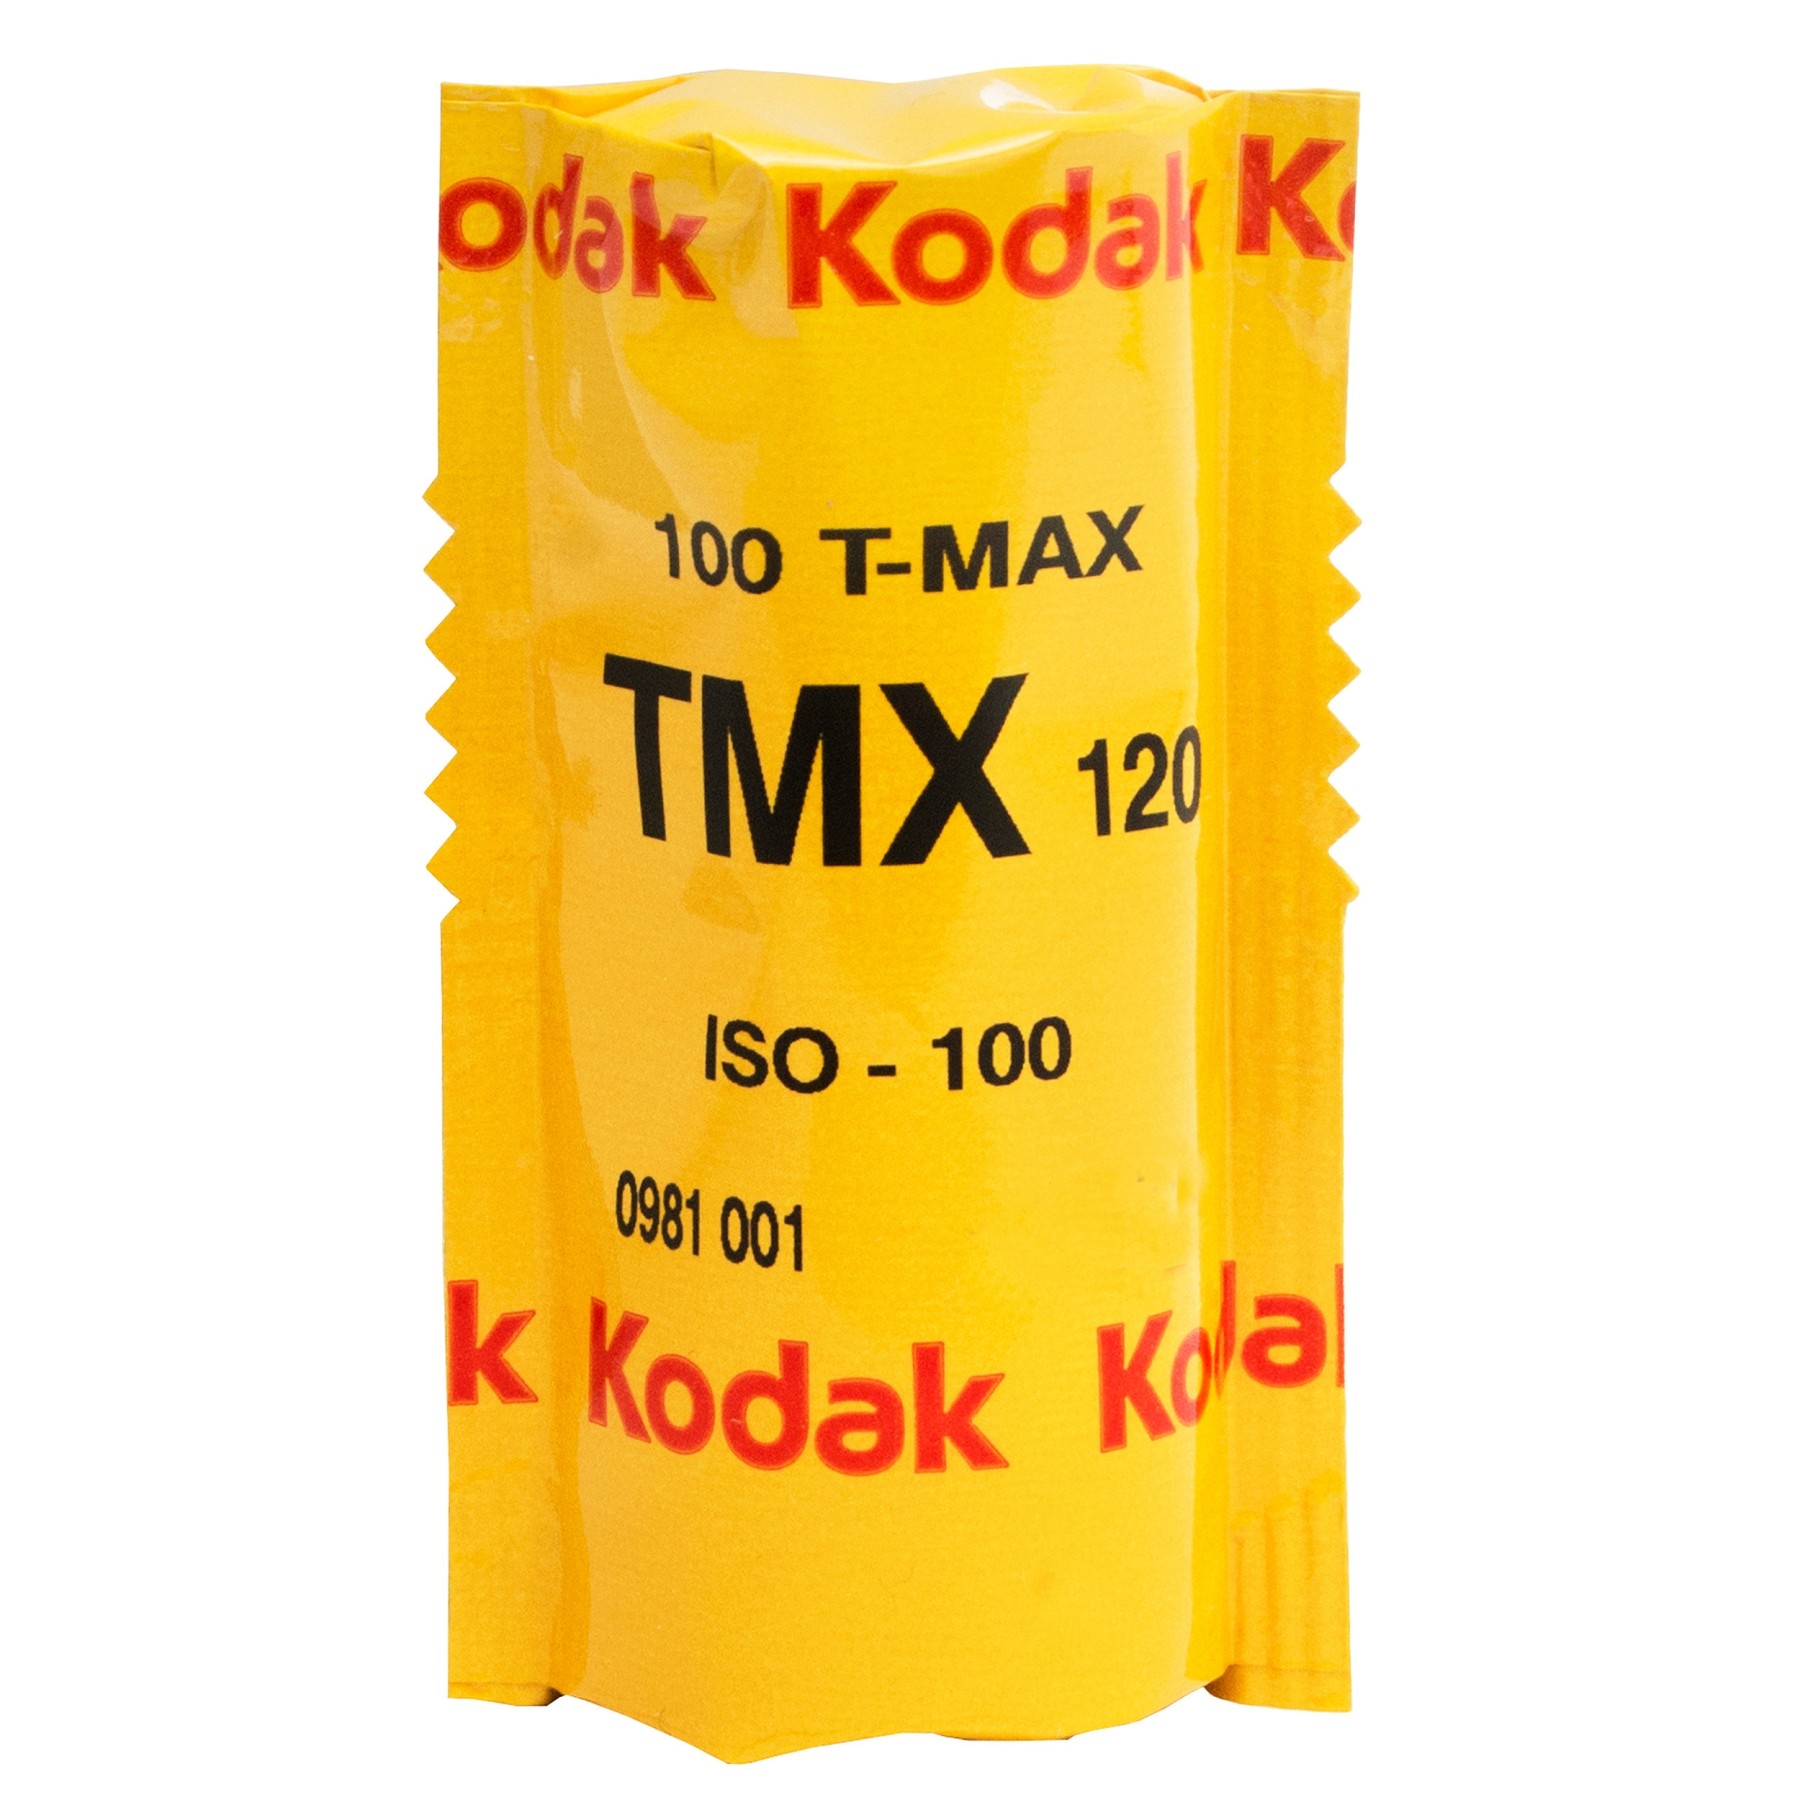 Kodak T-Max 100 120 (1 Roll) 